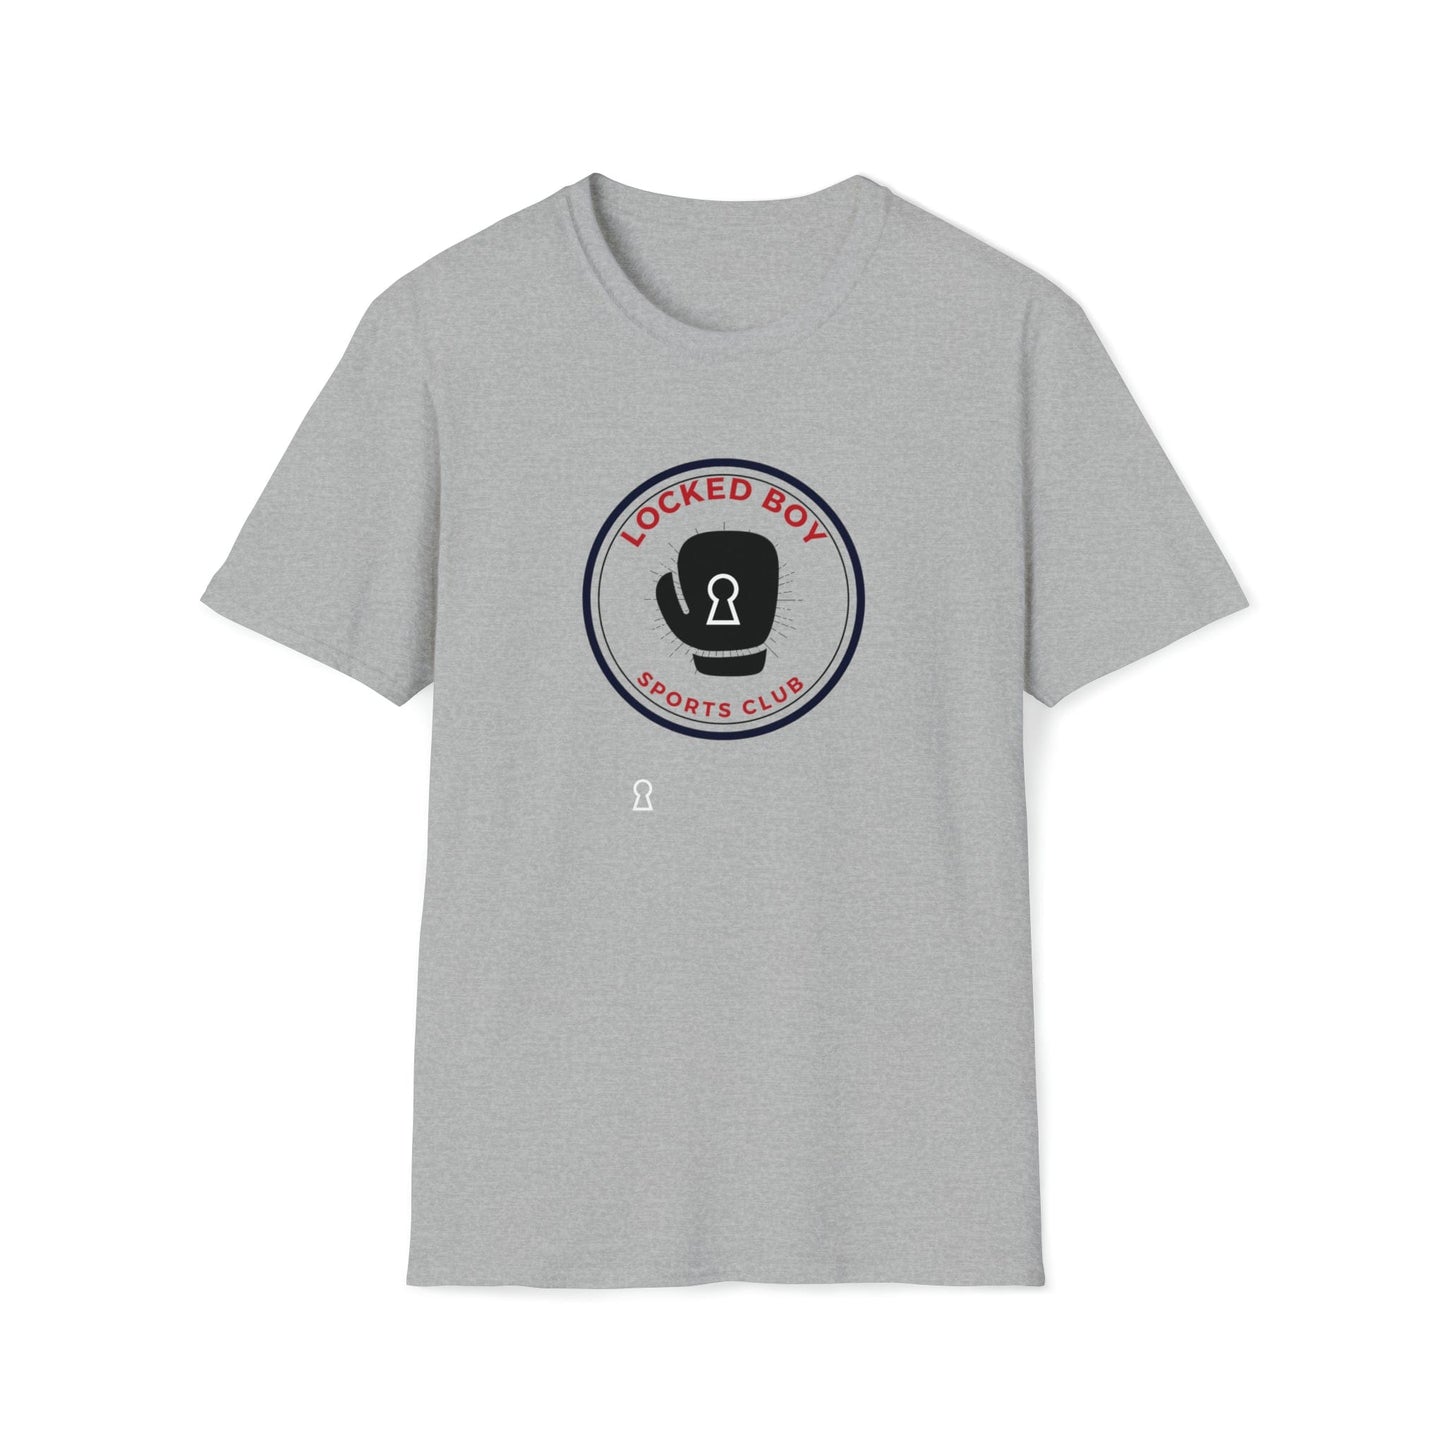 T-Shirt Sport Grey / S LockedBoy Sports Club - Chastity Tshirt Boxing Glove LEATHERDADDY BATOR